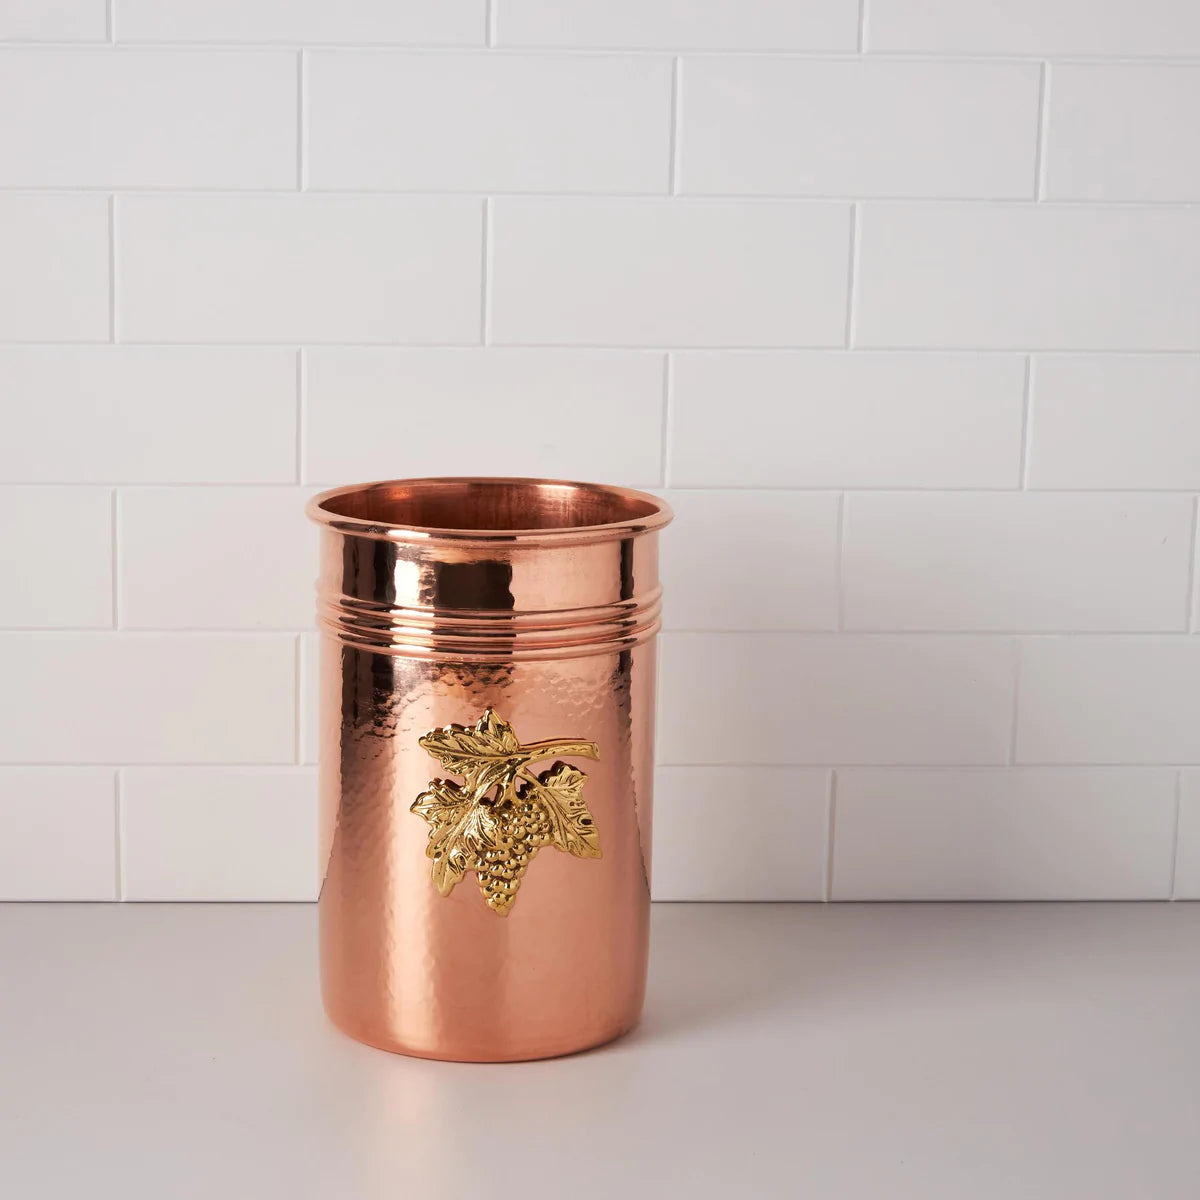 Ruffoni copper wine bottle holder